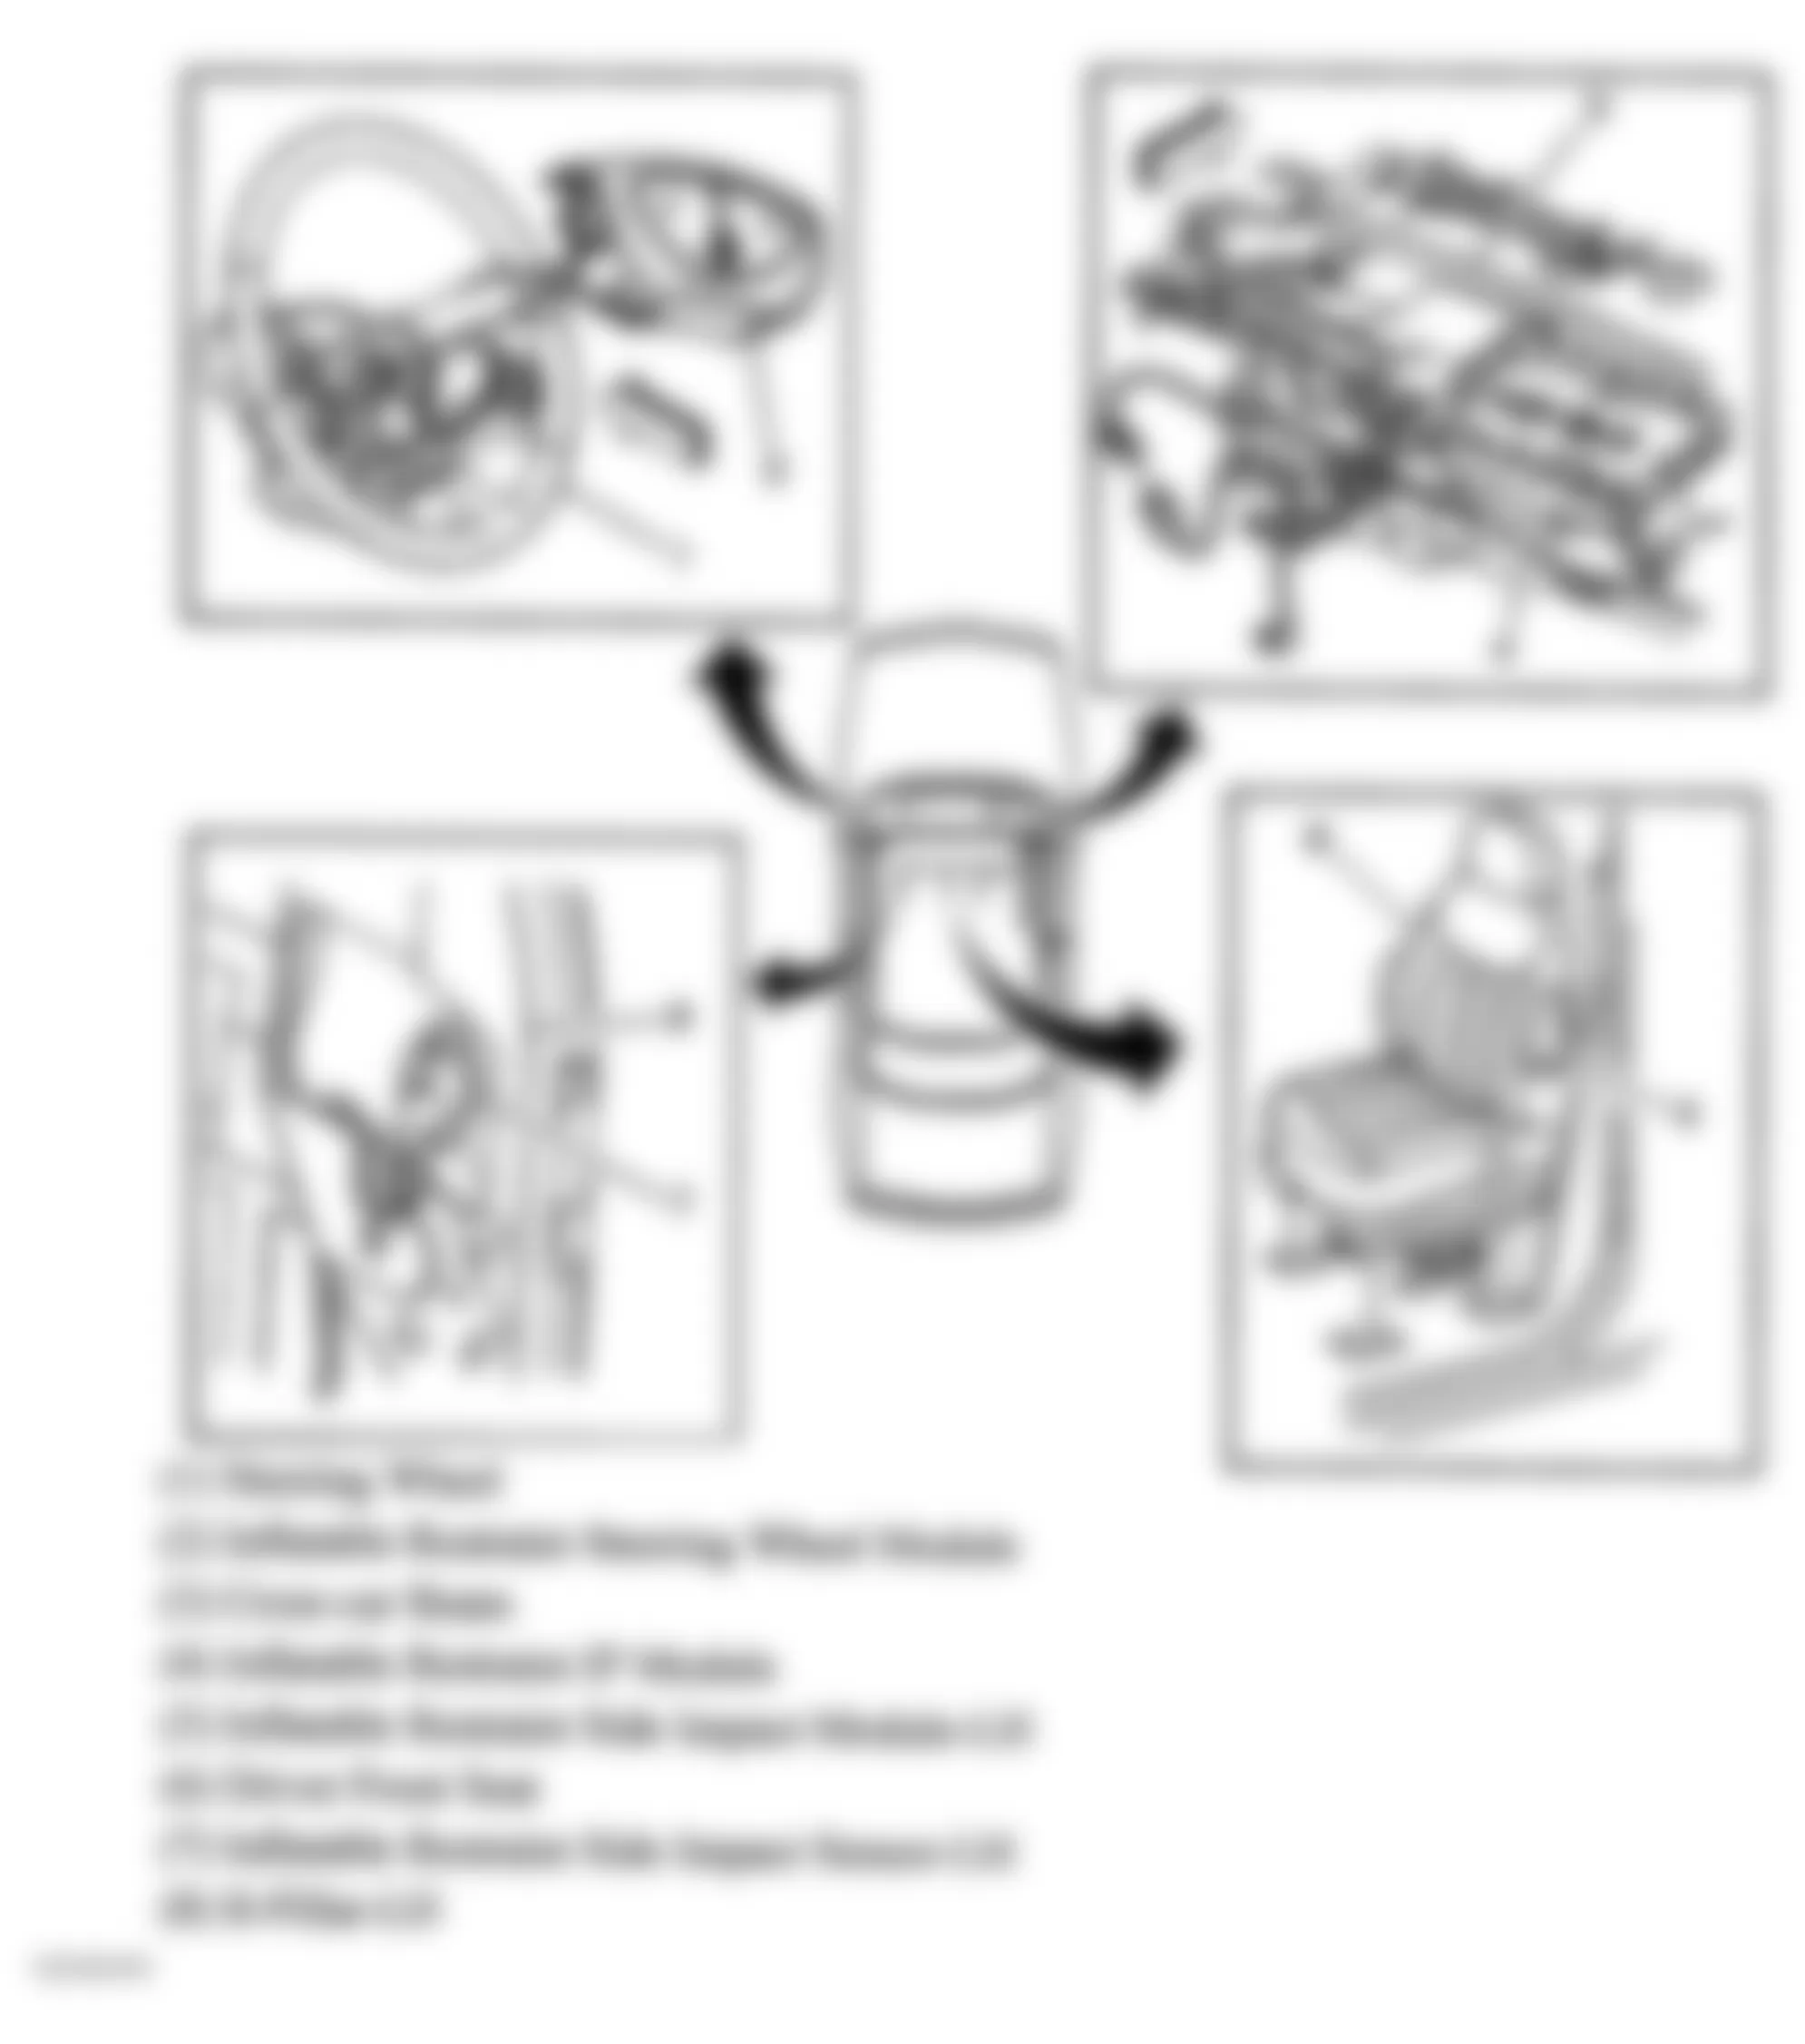 Buick Regal LS 2004 - Component Locations -  Air Bag Modules & Side Impact Sensor